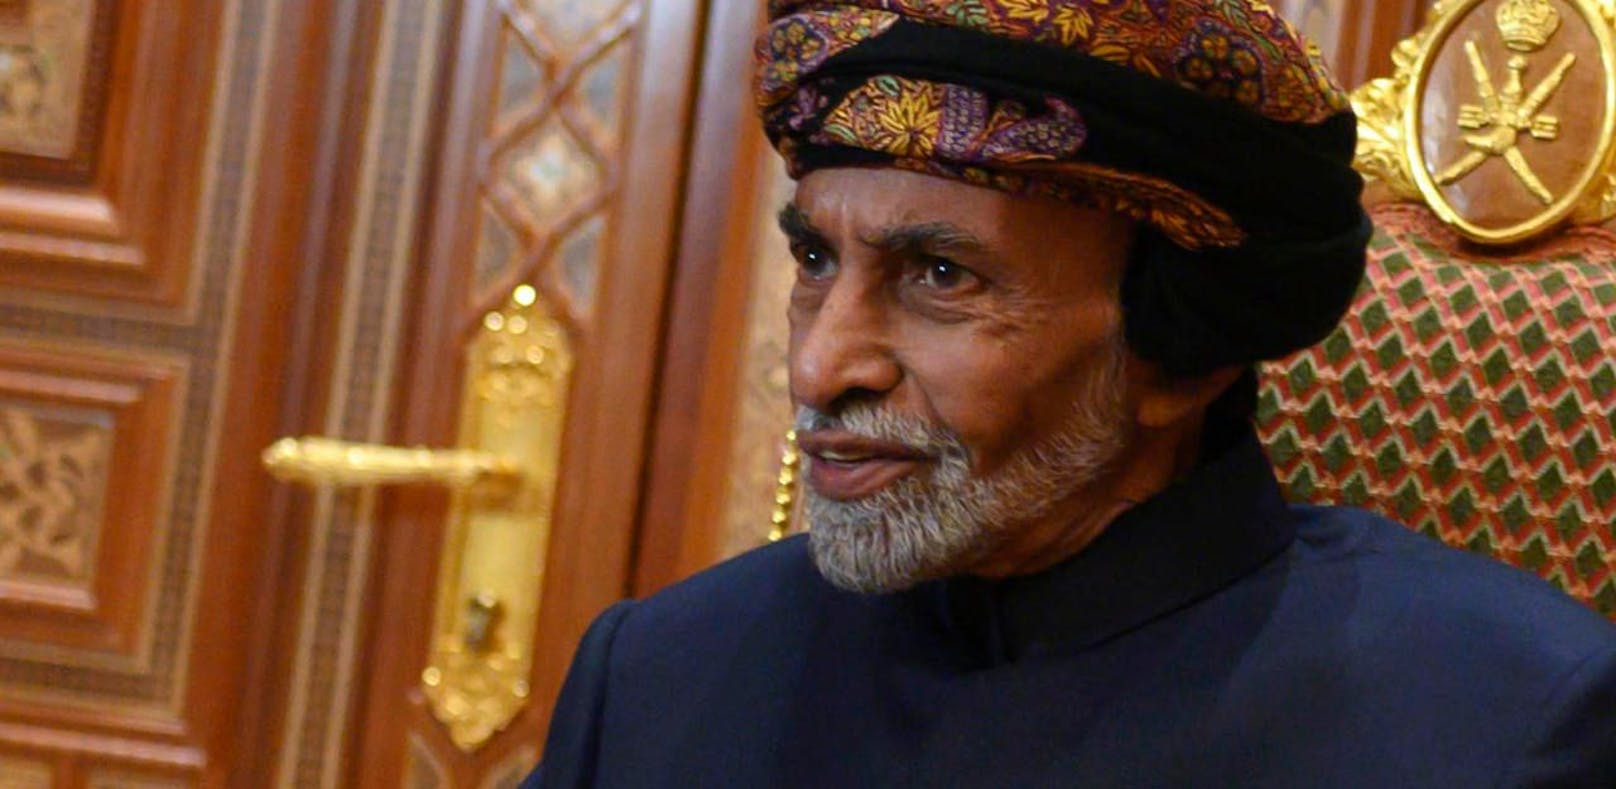 Der Sultan von Oman ist tot, Nachfolger vereidigt